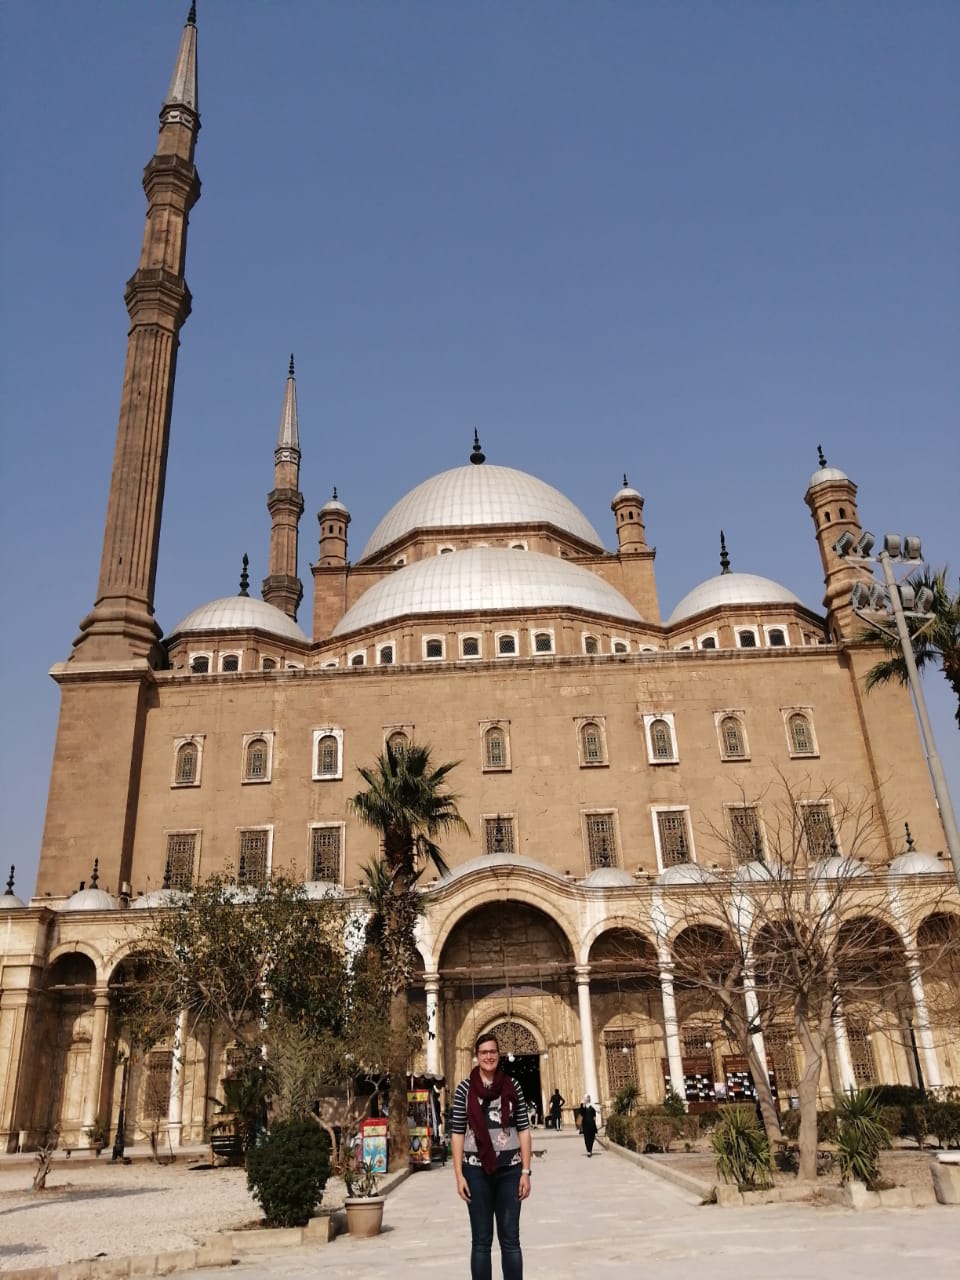 Cairo Citadel (Citadel of Cairo or Citadel of Saladin)